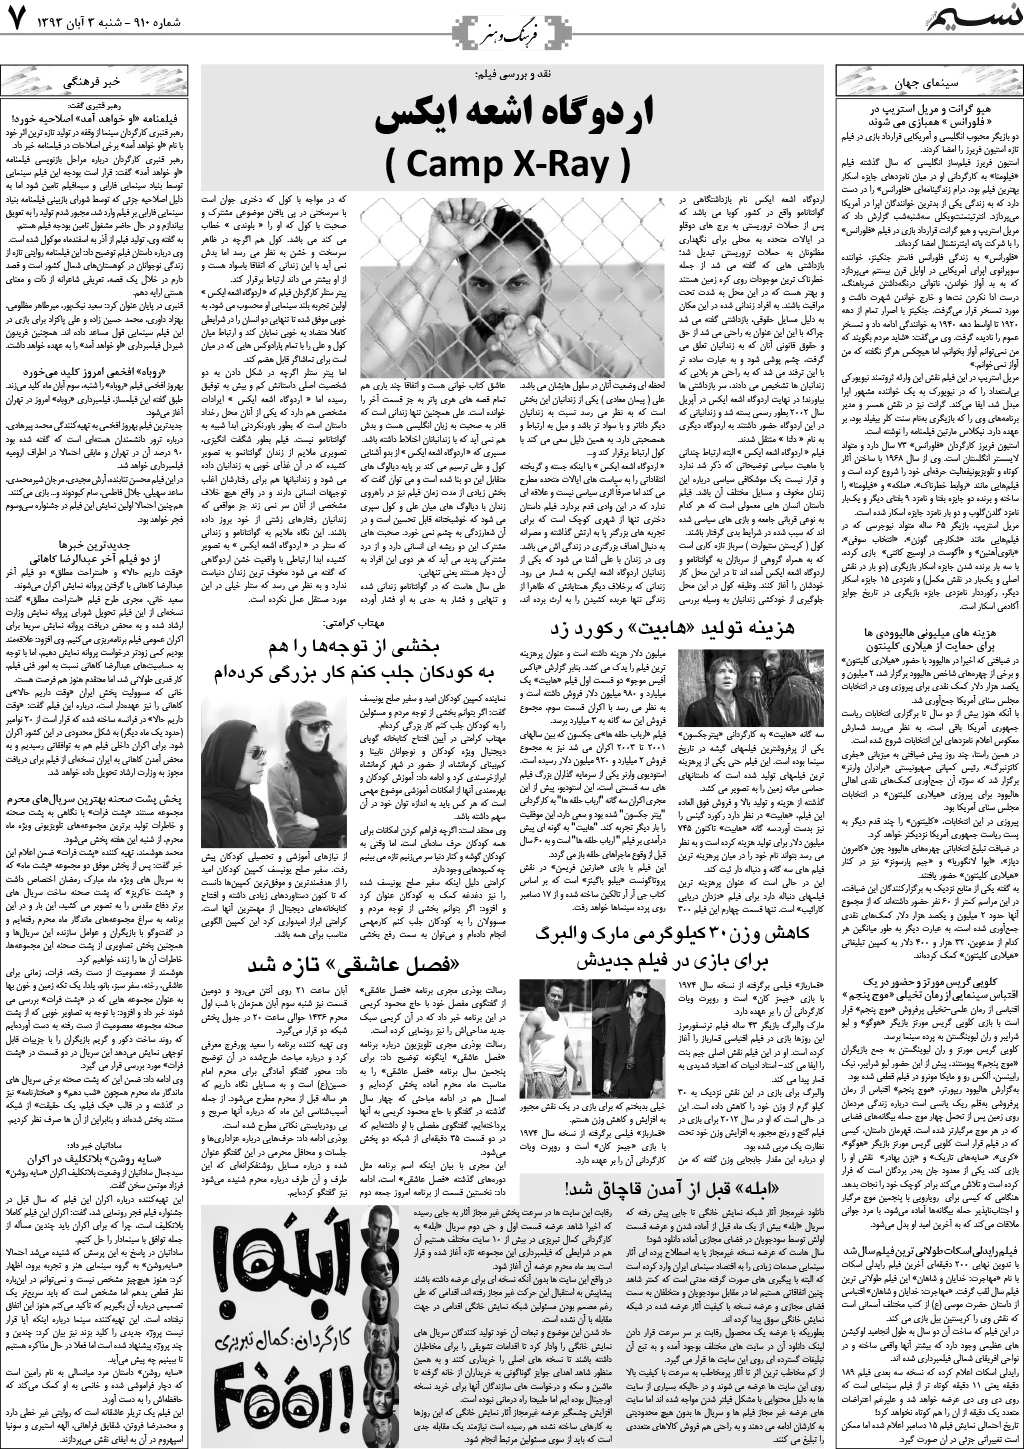 صفحه فرهنگ و هنر روزنامه نسیم شماره 910